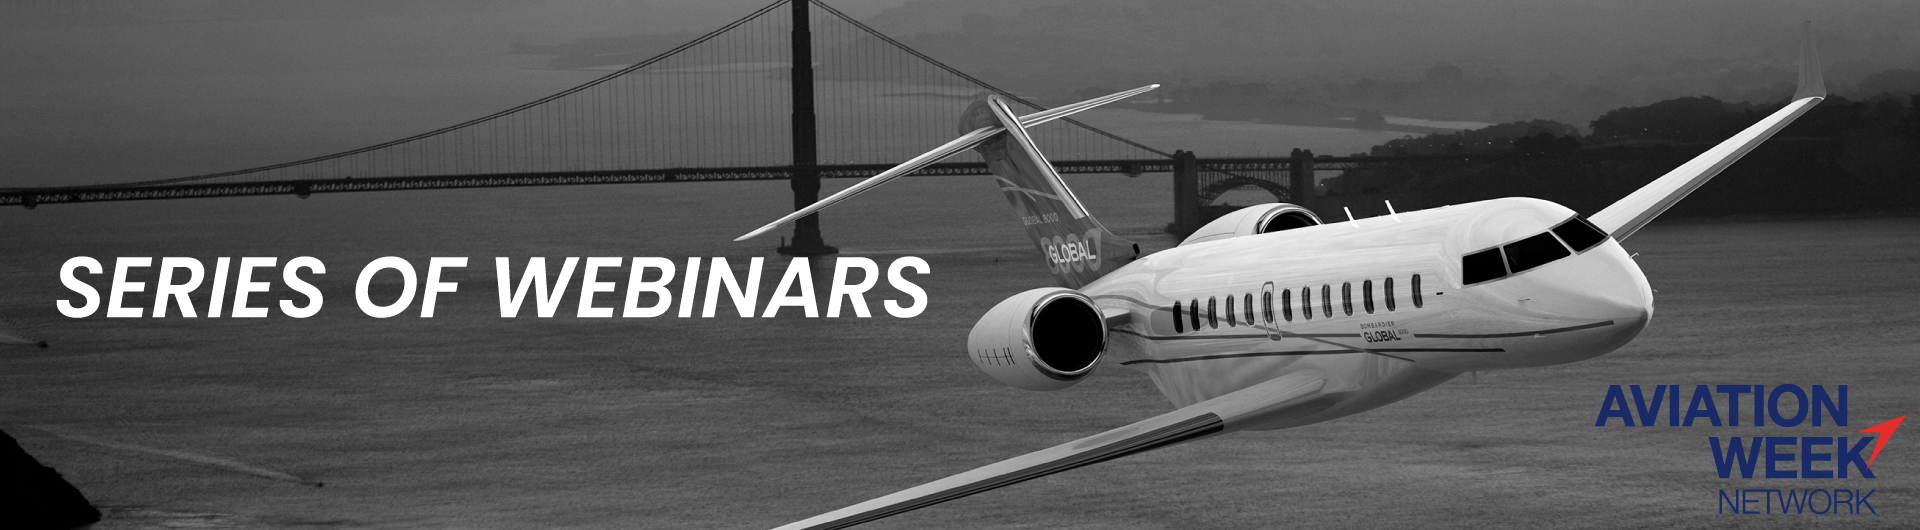 Aviation Week - Webinars series